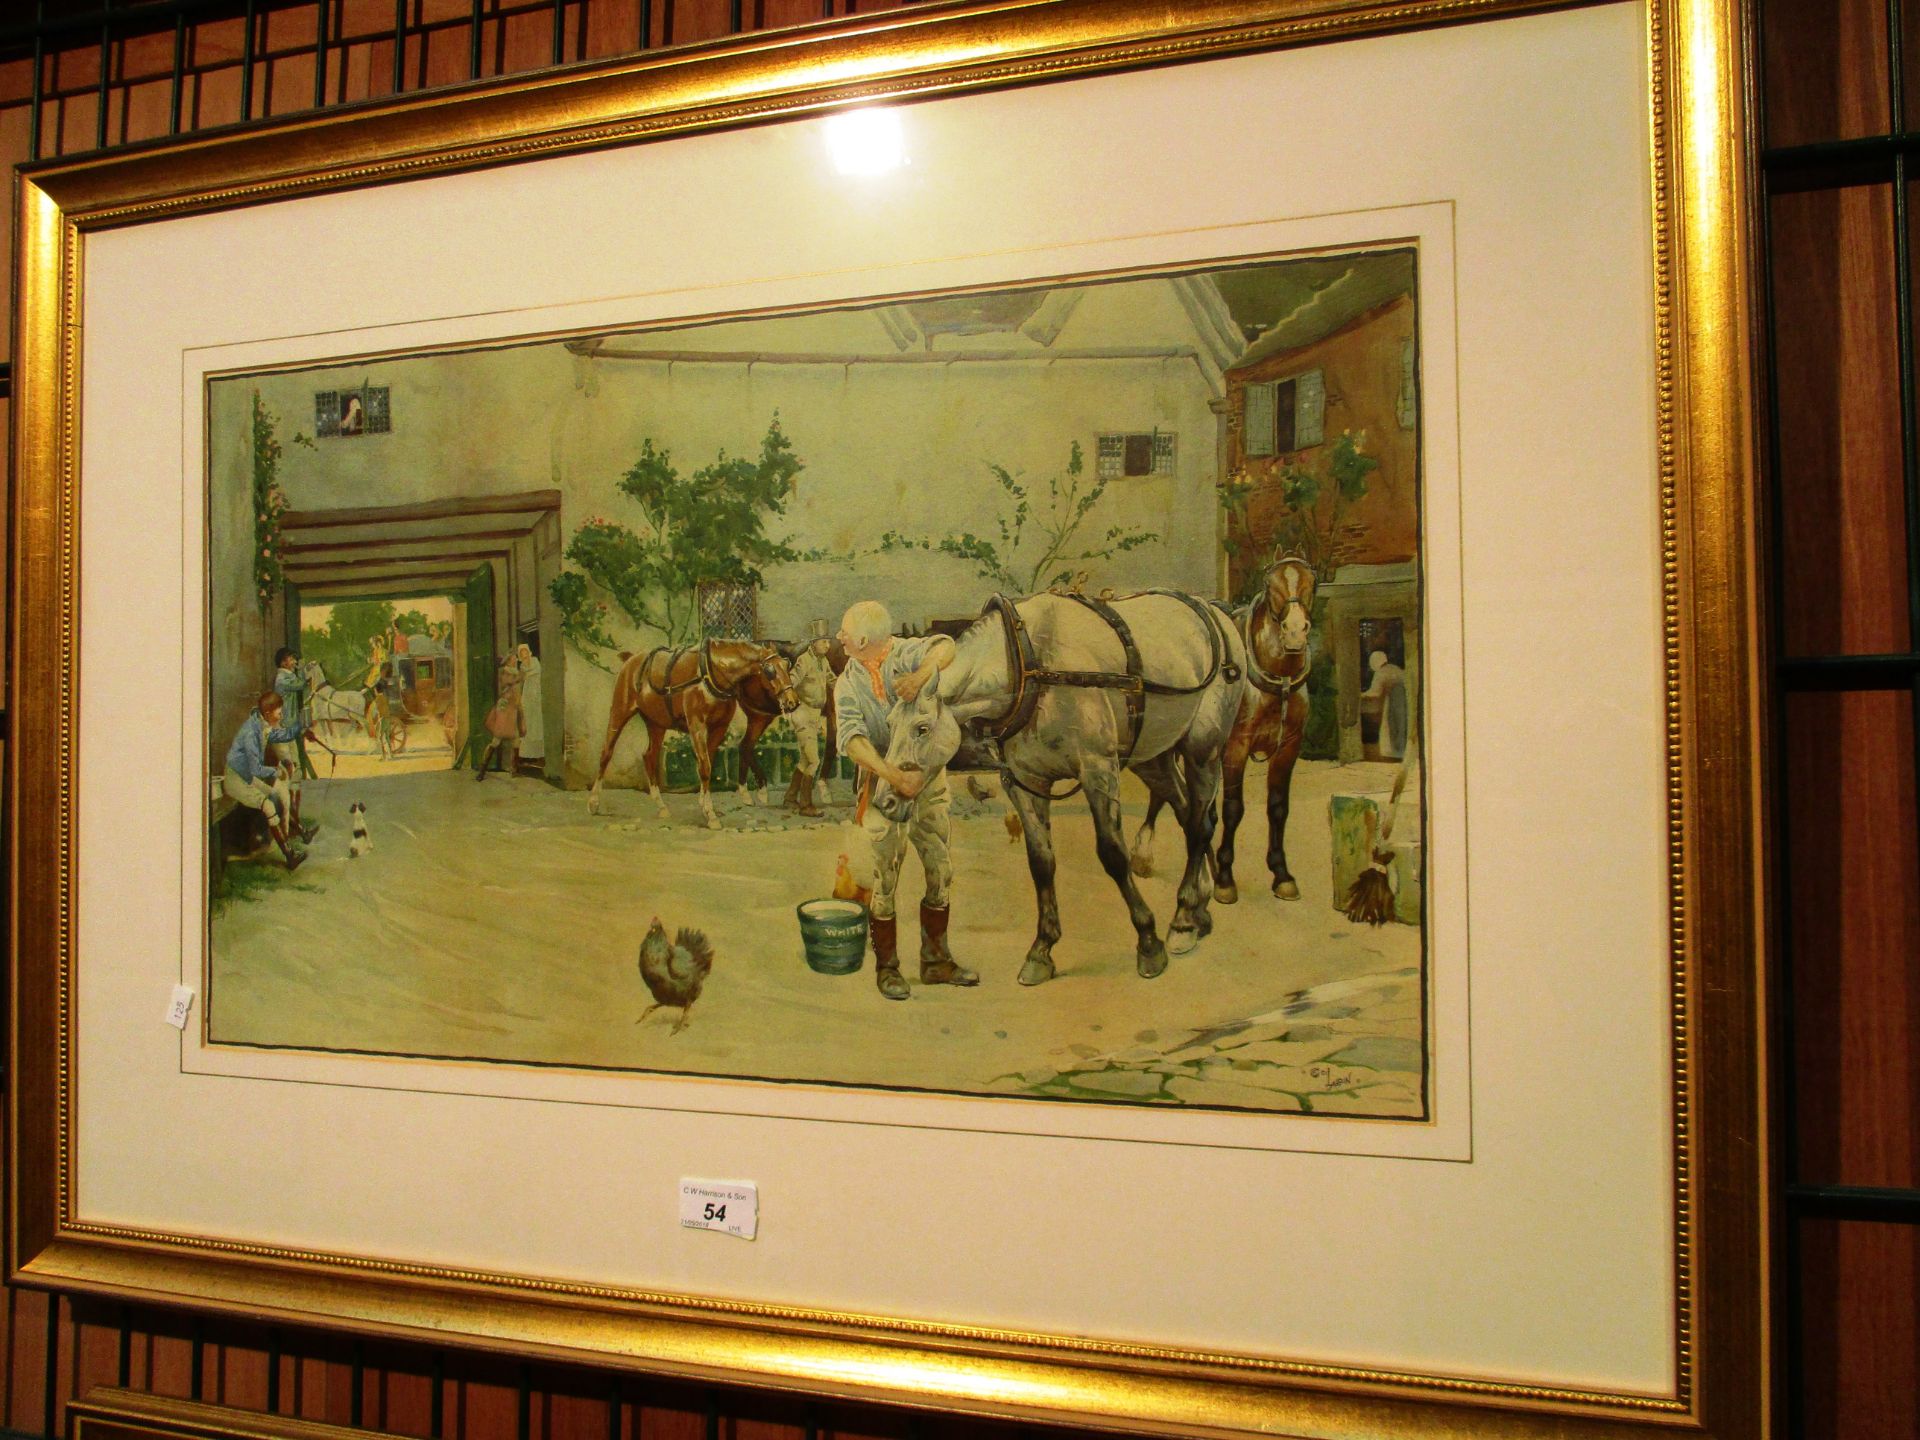 Cecil Aldin - framed print of a coaching inn scene - 34 x 60 cm